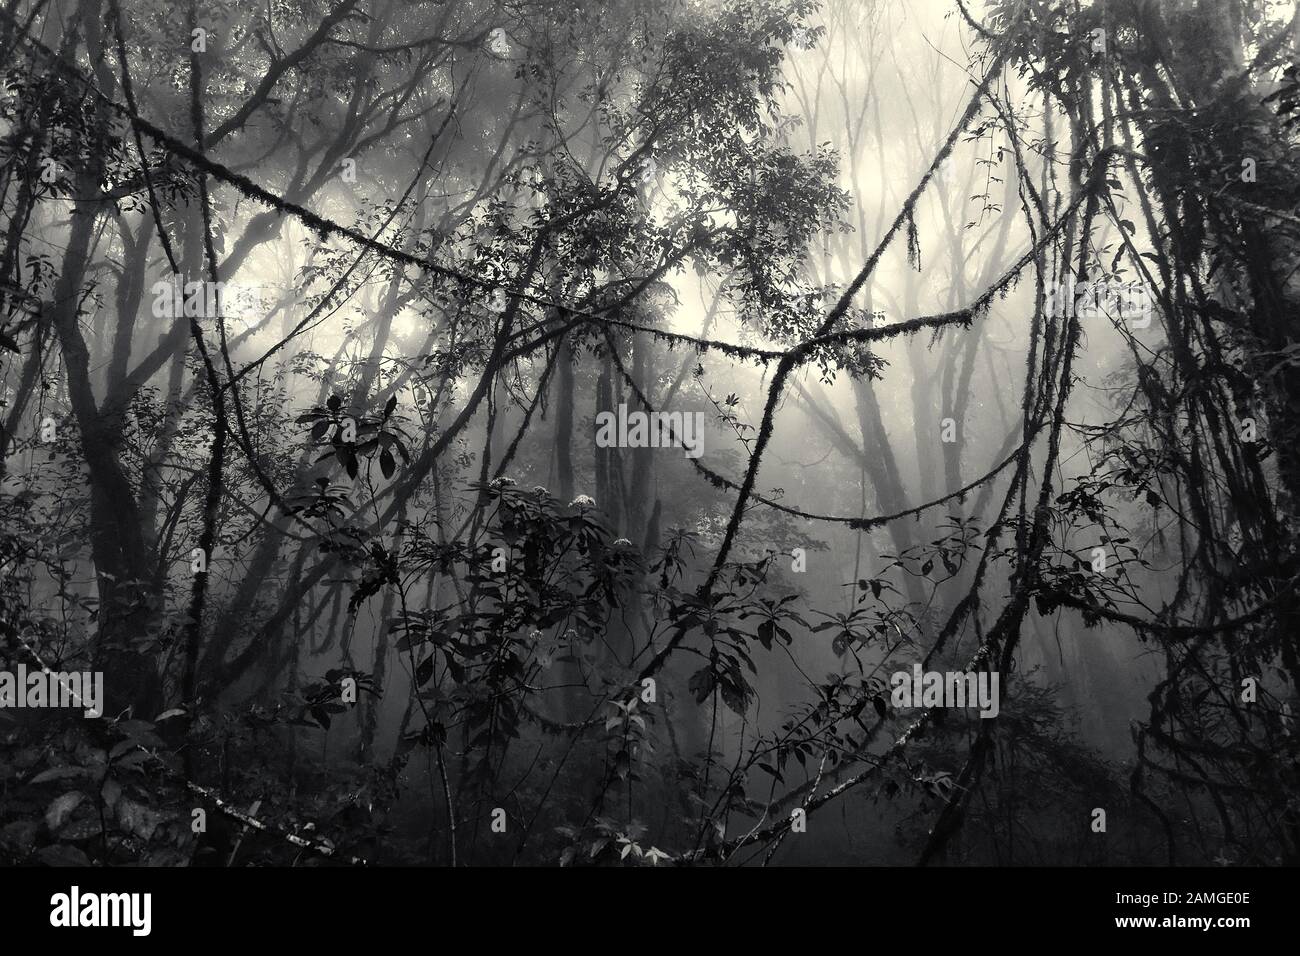 Misty forêt tropicale avec lianas emmêlées en début de matinée, édition teintée vintage Banque D'Images